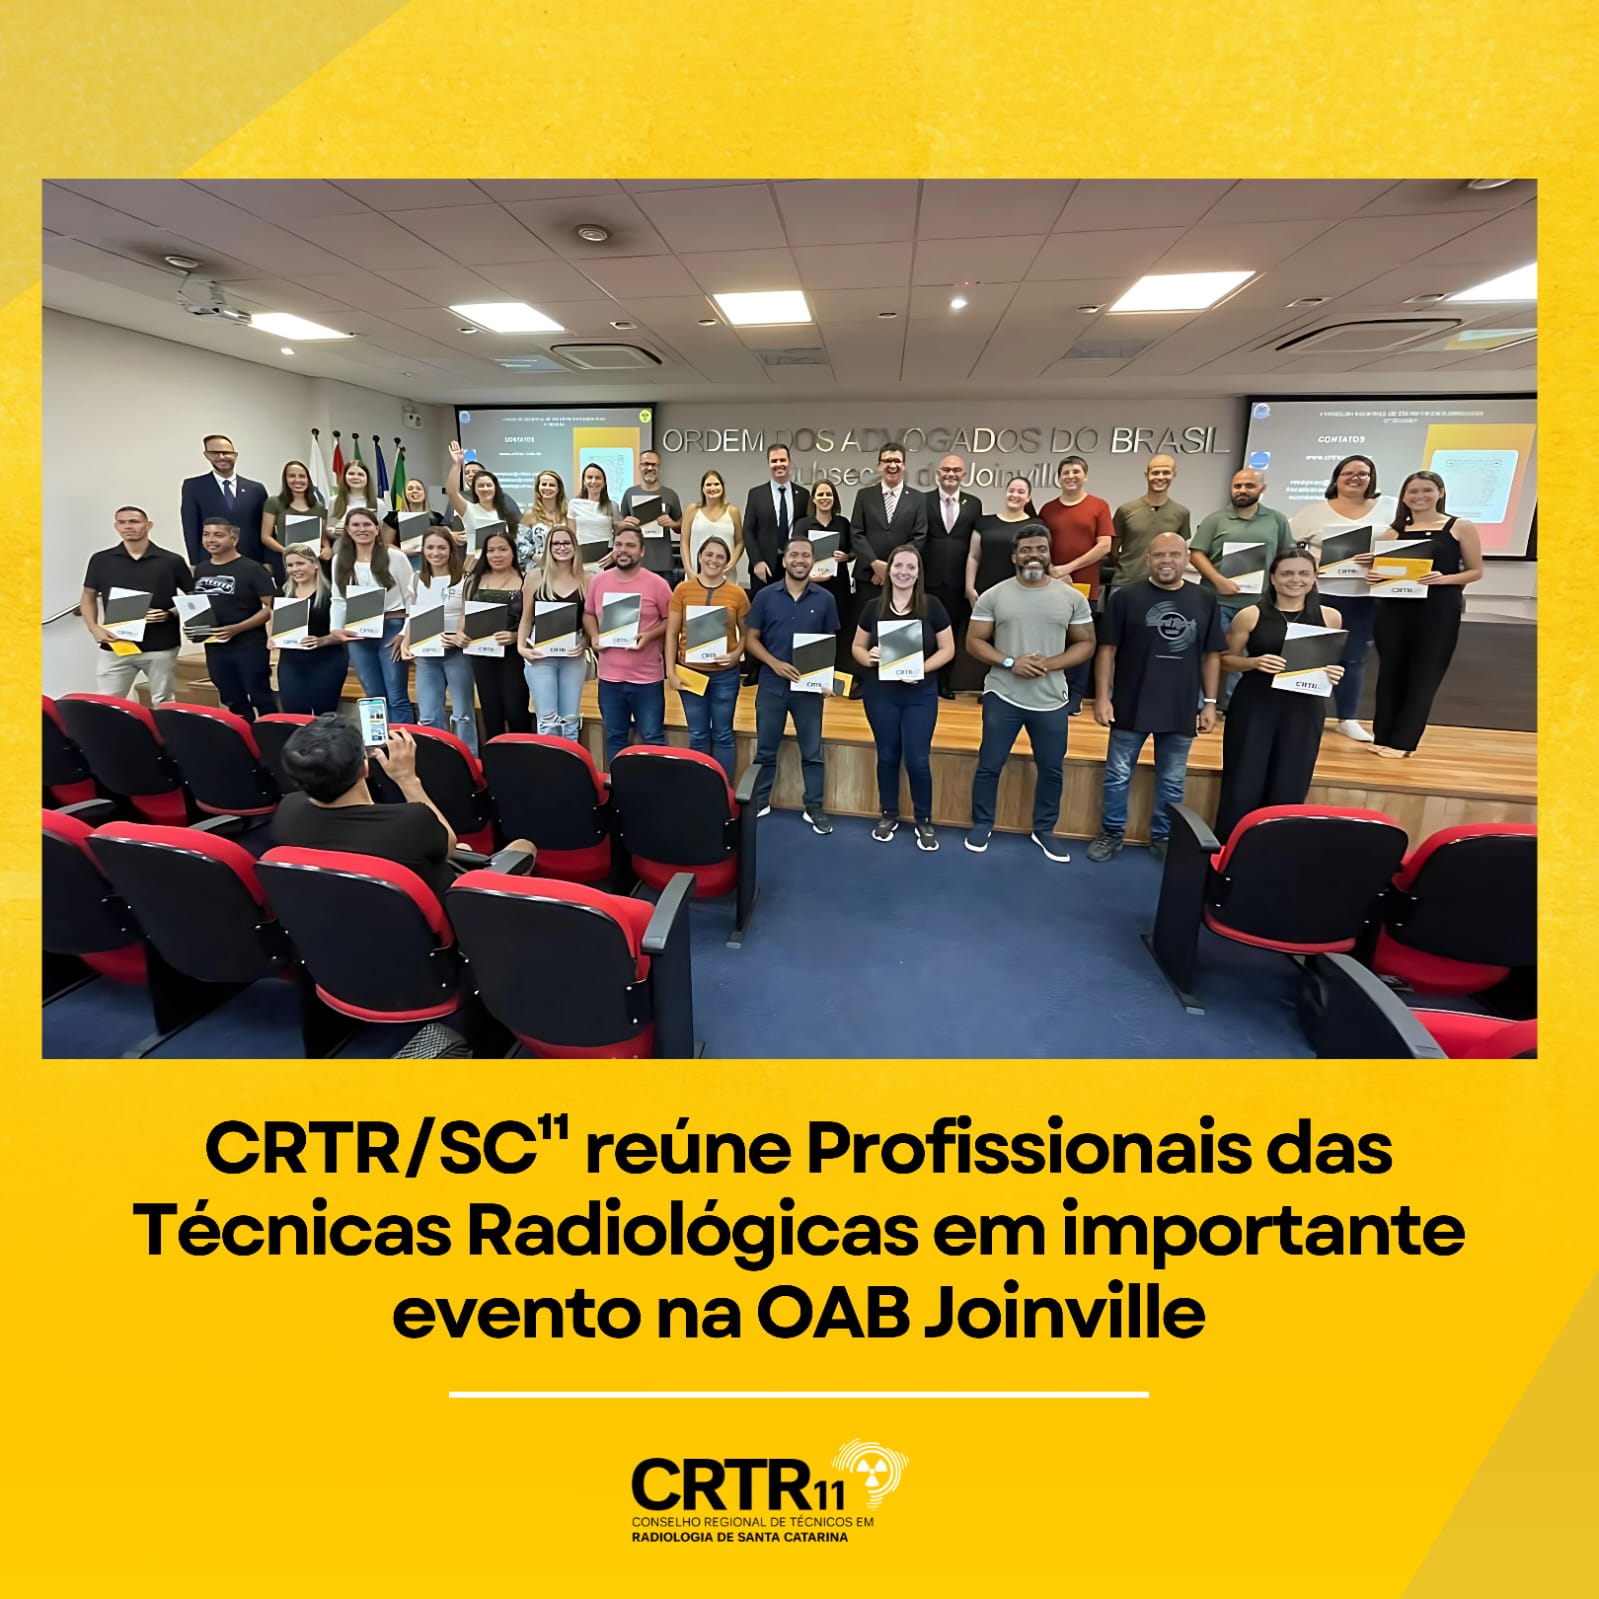 CRTR/SC¹¹ reúne Profissionais das Técnicas Radiológicas em importante evento na OAB Joinville